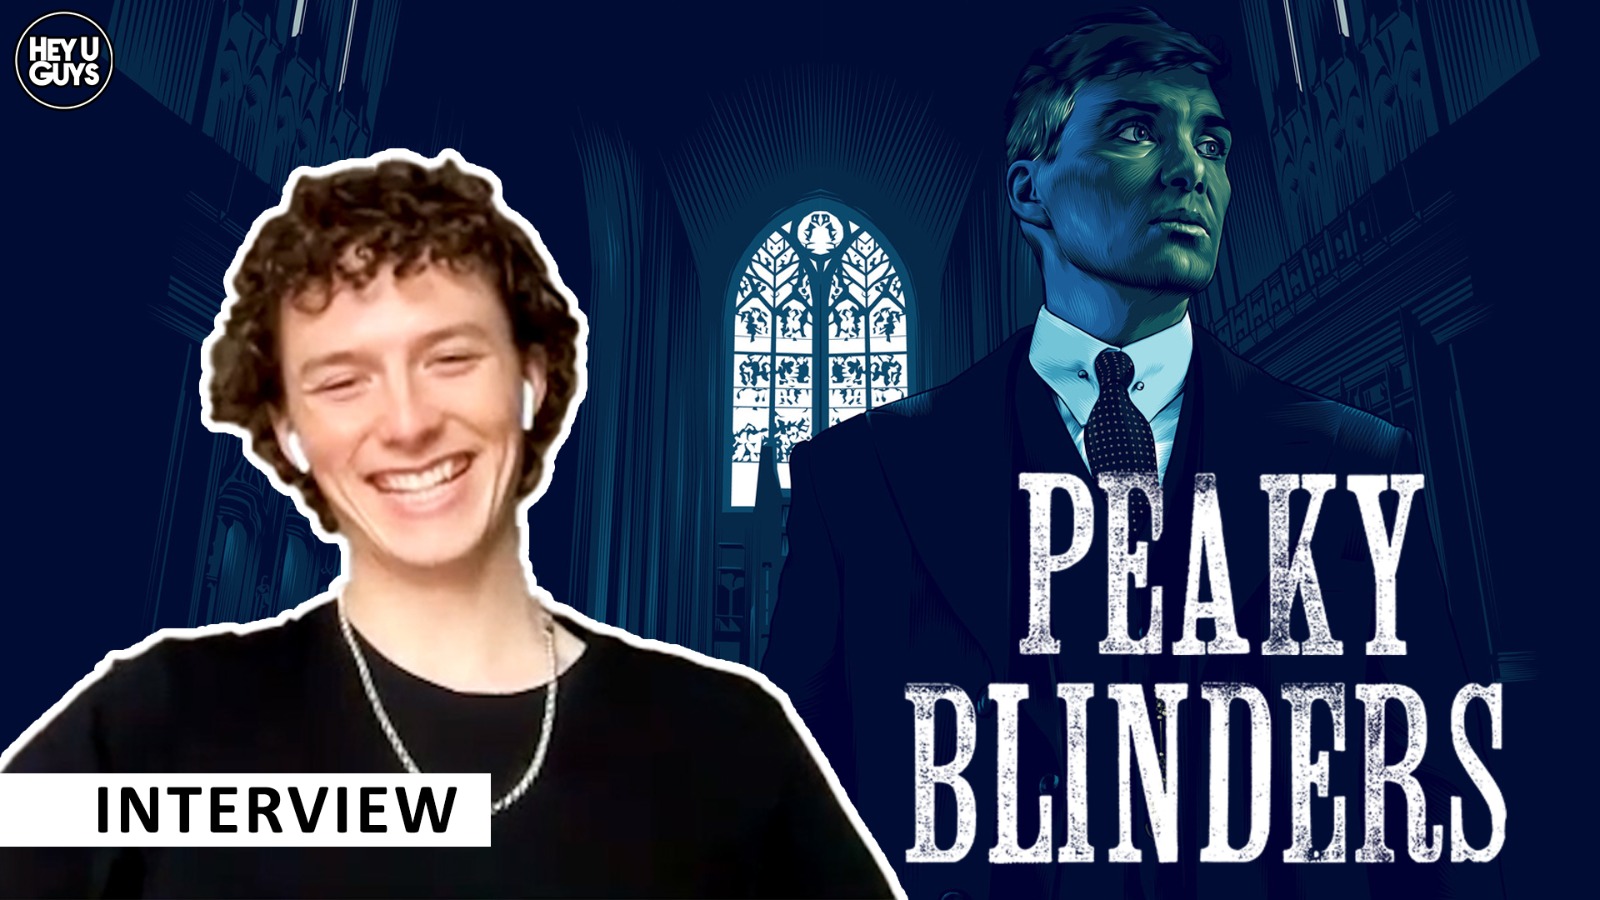 Peaky Blinders Season 6 cast interviews